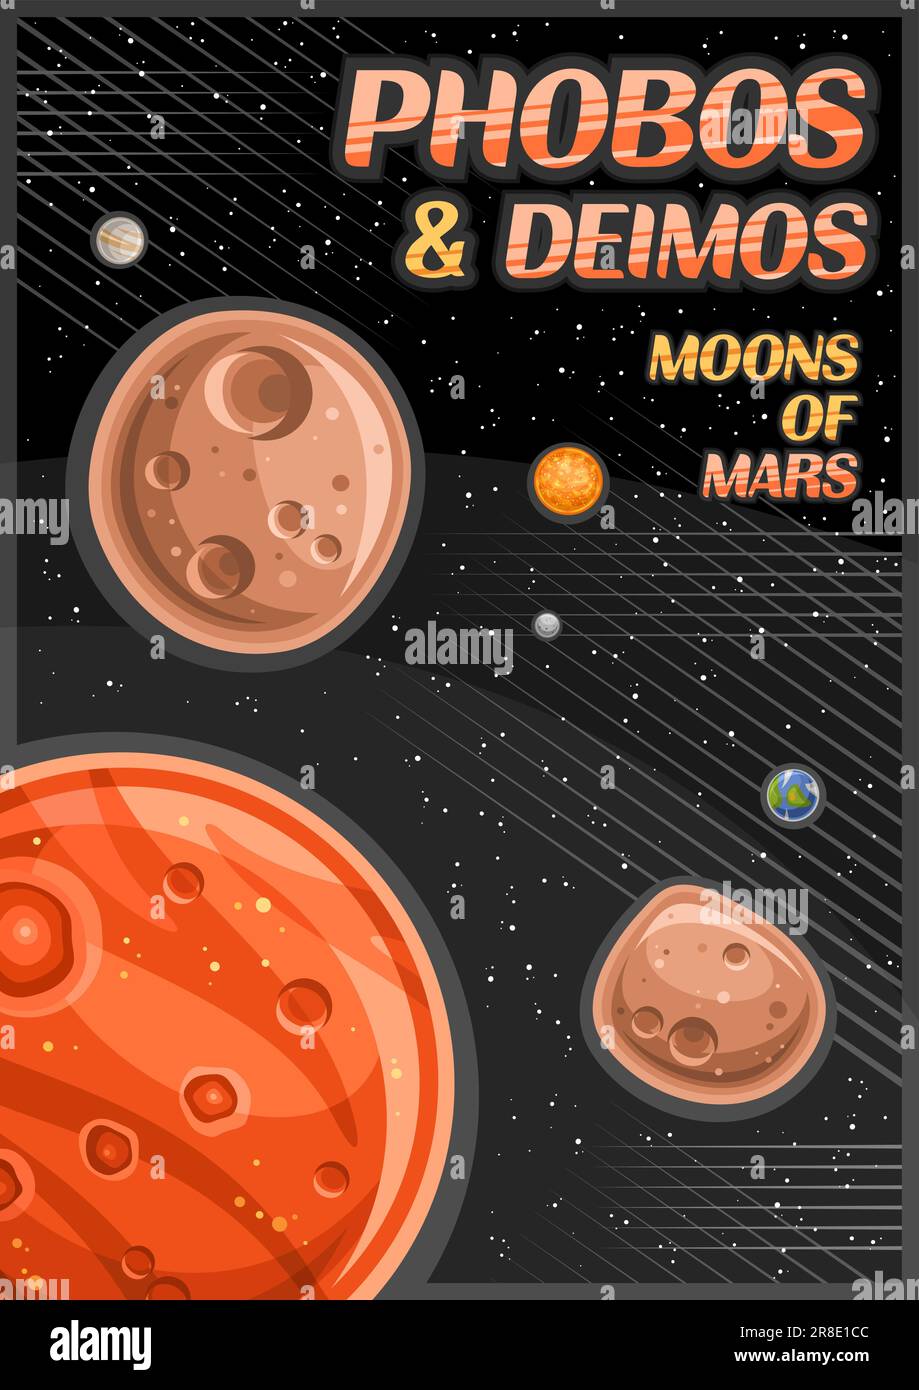 Vector Poster per Phobos e Deimos, banner verticale con illustrazione di lune di pietra rotante intorno al pianeta delle Marne cartoni animati su sfondo stellato, A4 per Illustrazione Vettoriale